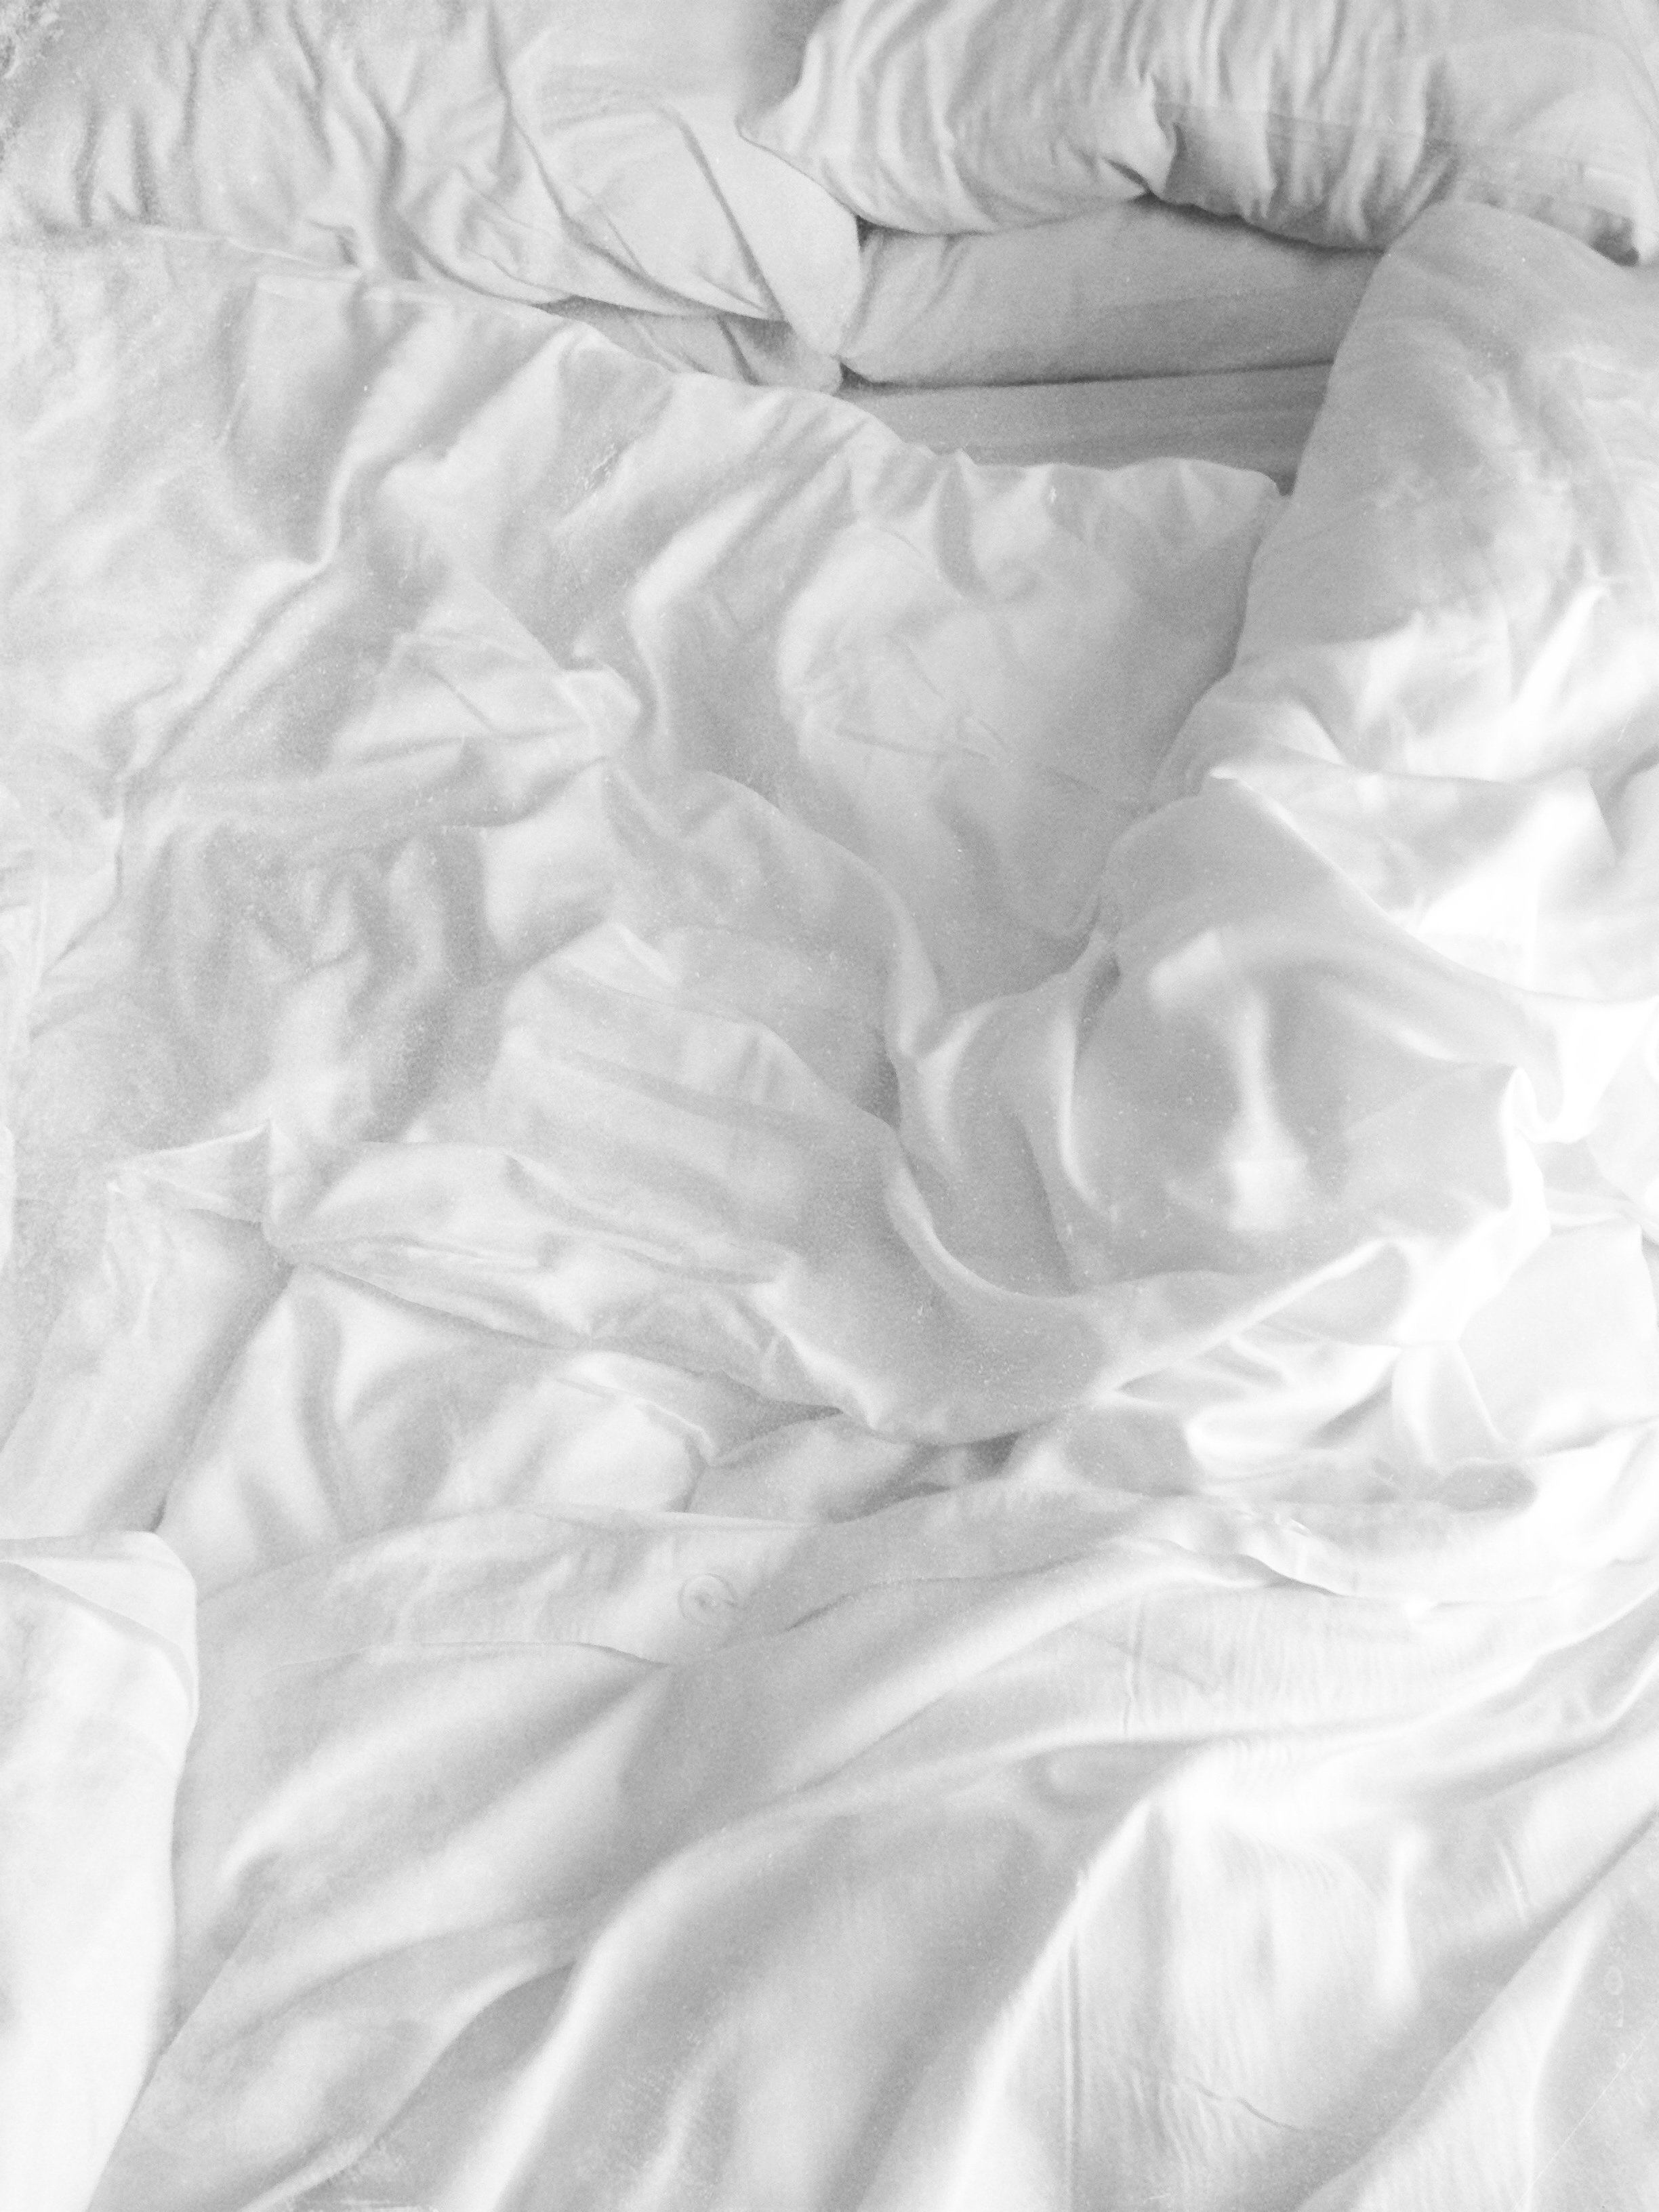 Смятая белая постель